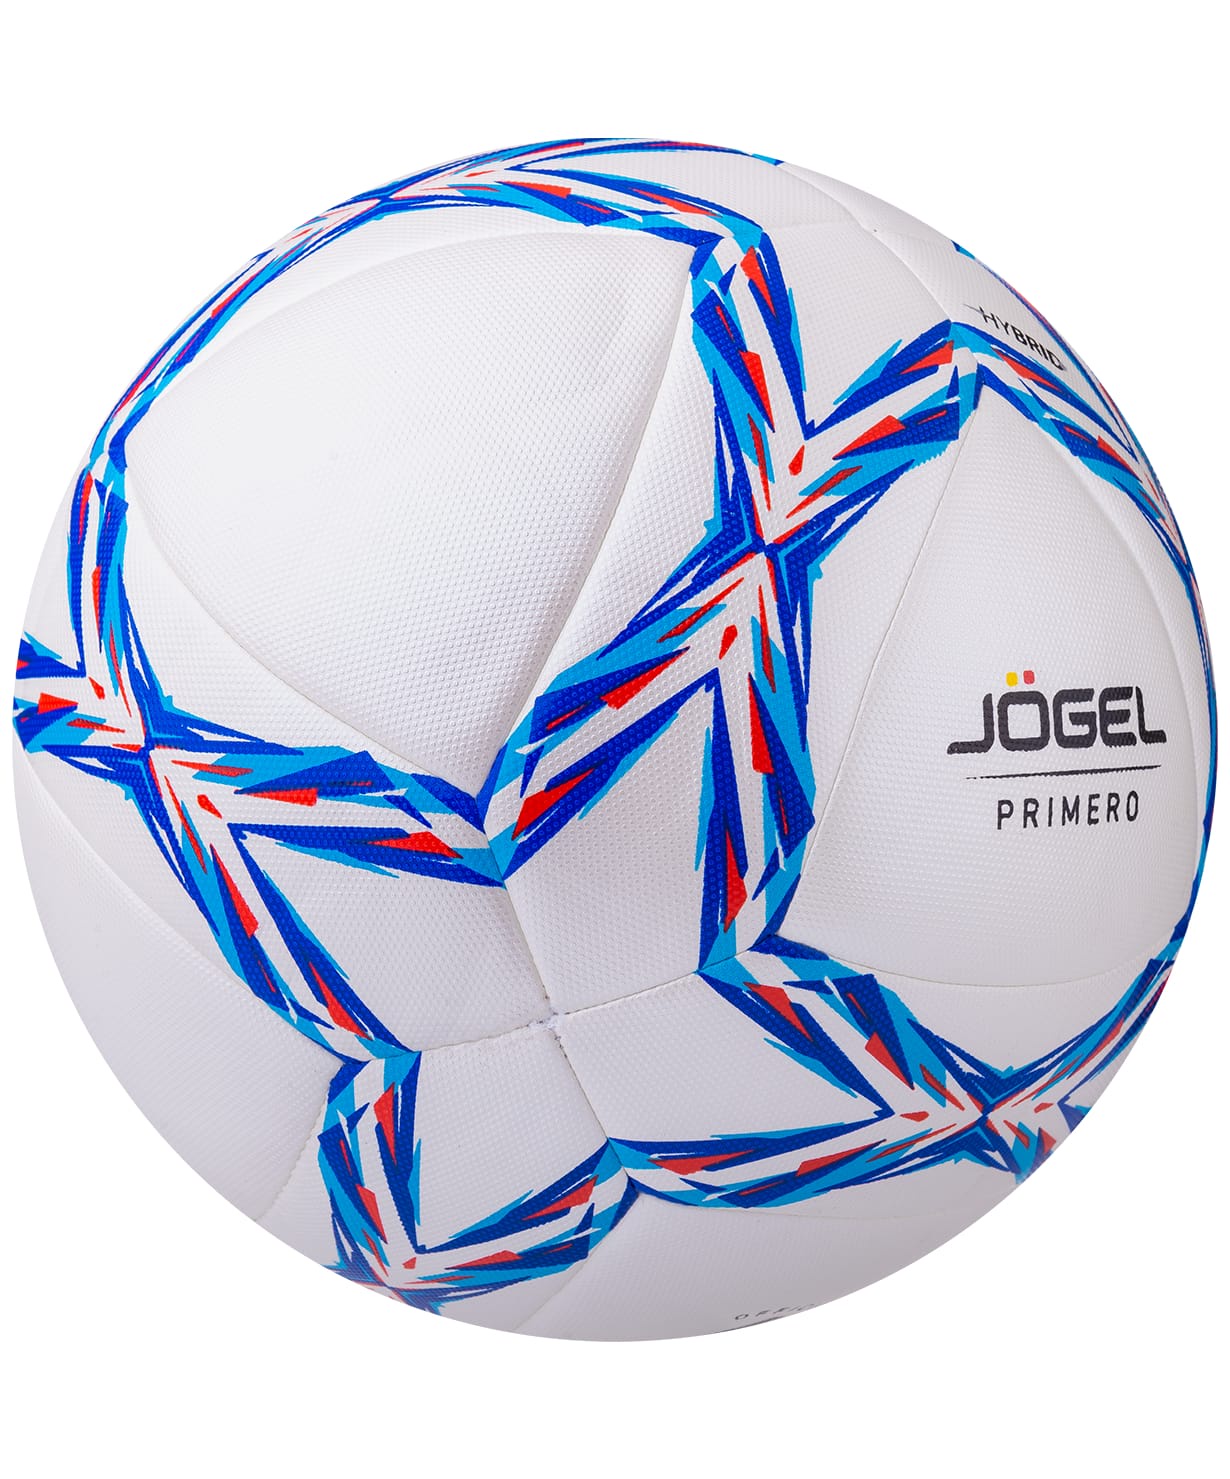 Мяч футбольный Jogel Primero, белый, голубой, 1